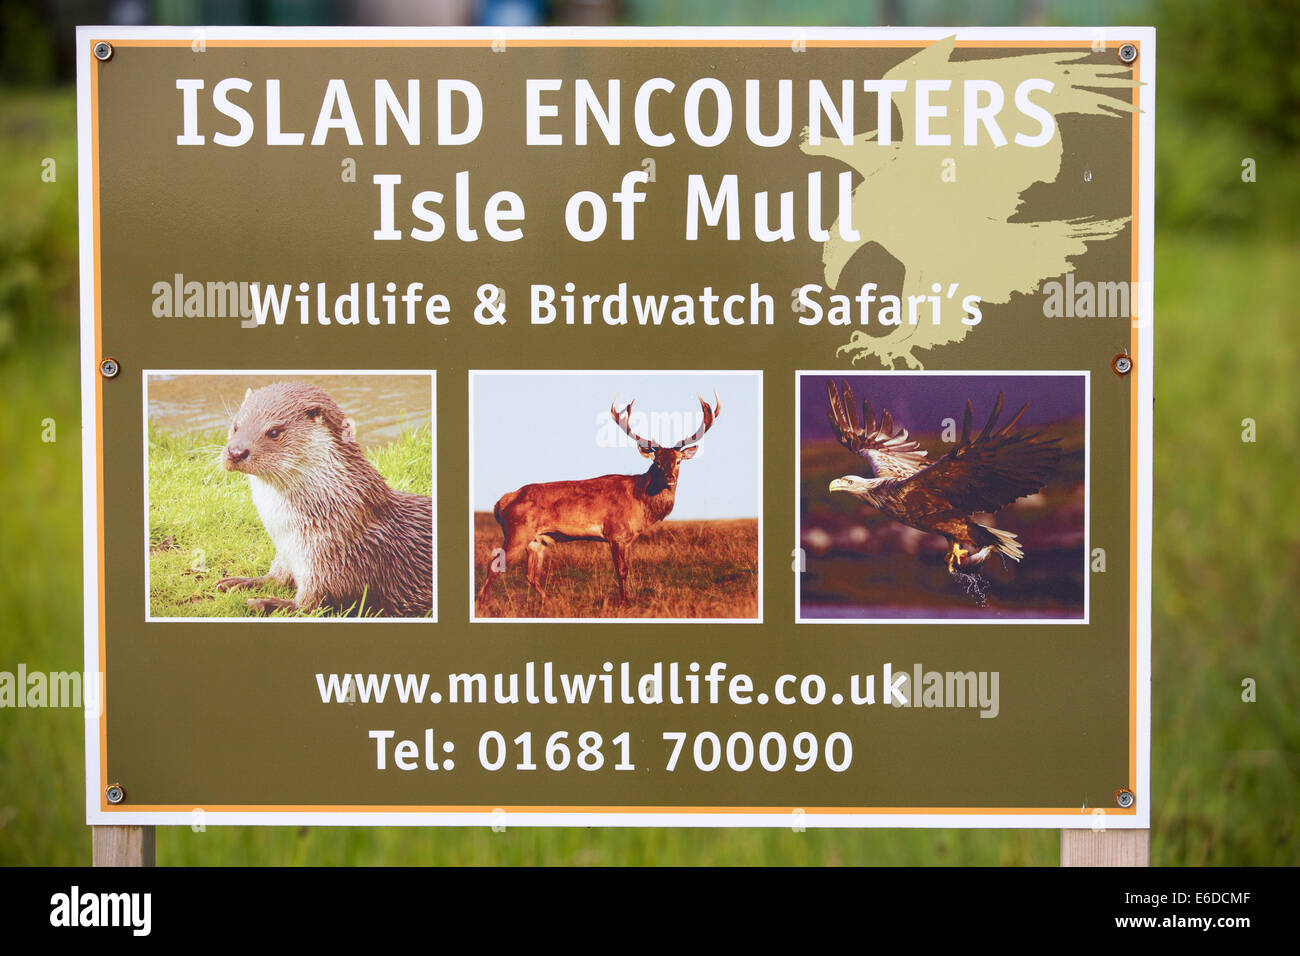 Wildlife tourism on Mull, Scotland, UK. Stock Photo